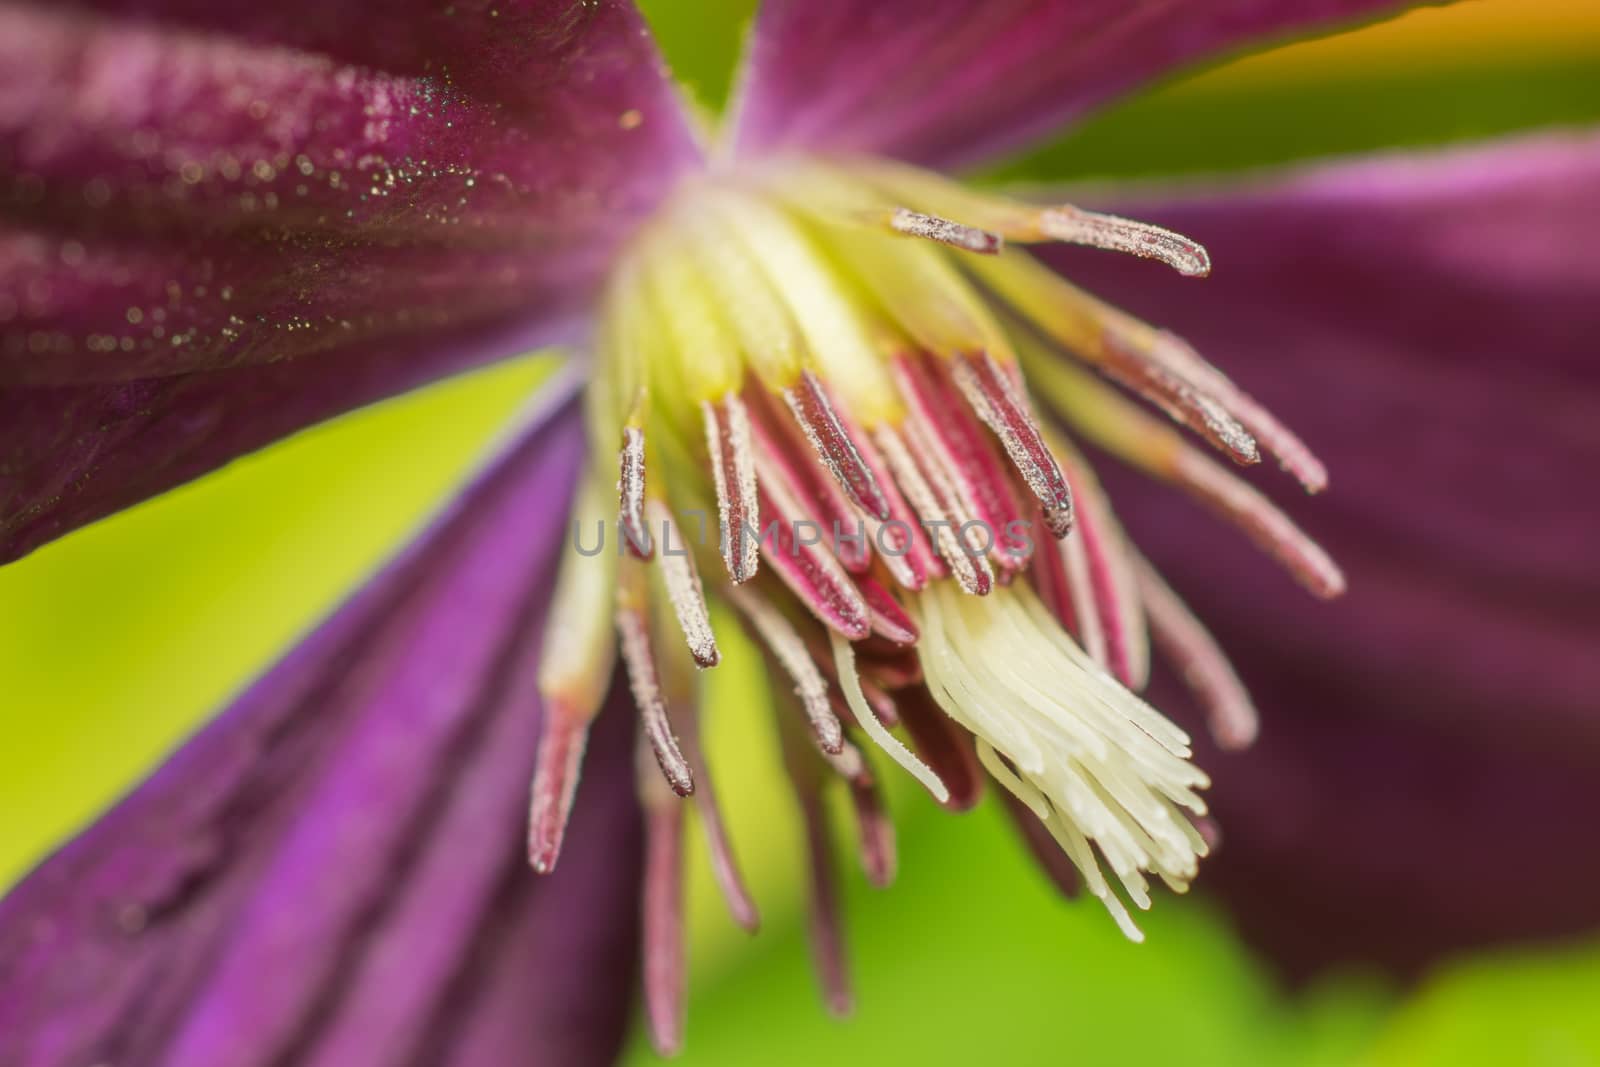 Purple clematis flower